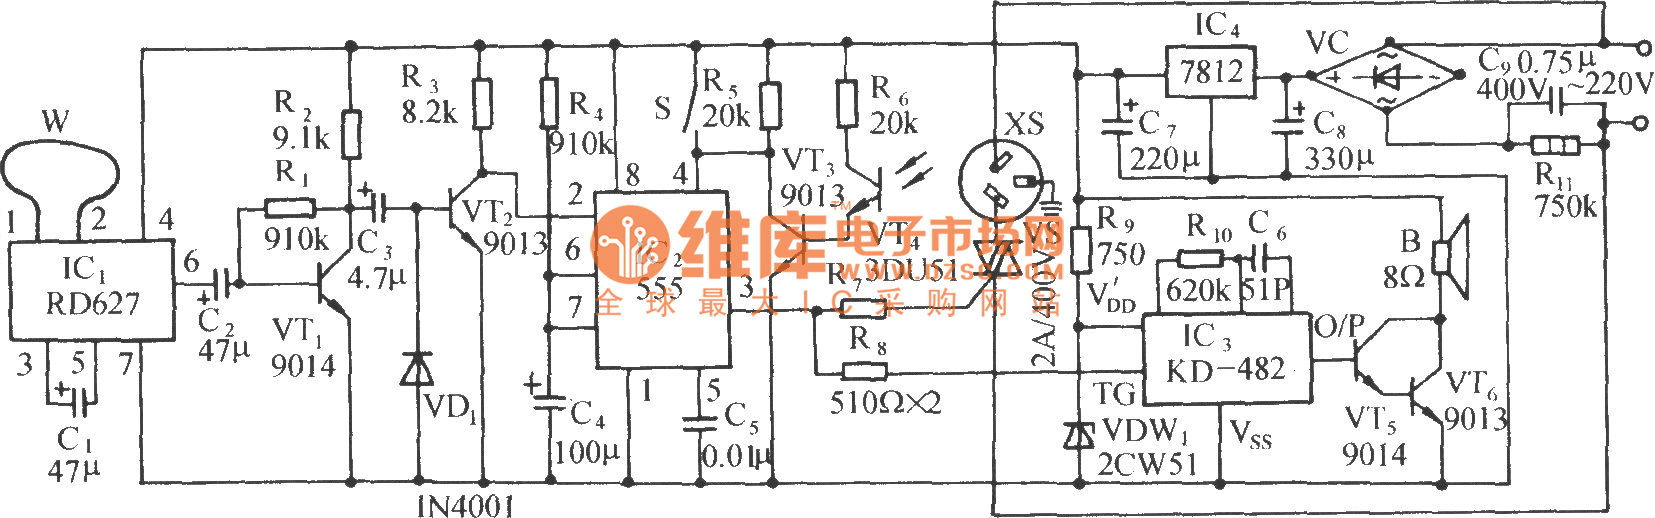 多普勒效应和光照双控自动门插座电路(RD627)